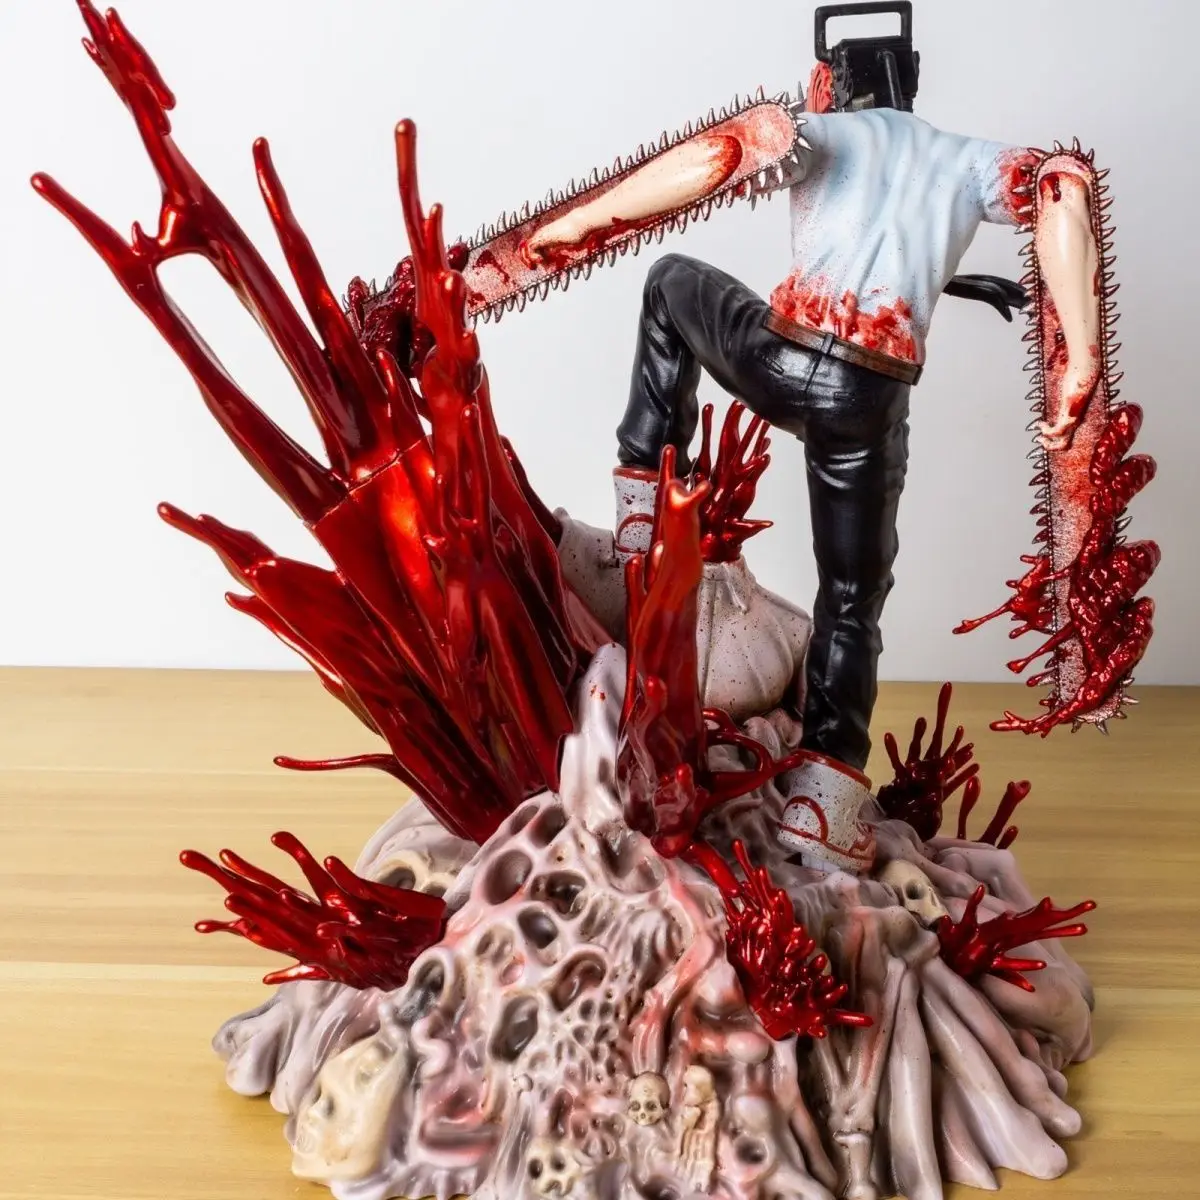 14.5cm sentado homem motosserra denji figura pochita sangue demônio anime  desktop ornamentos coleção brinquedos modelo - AliExpress